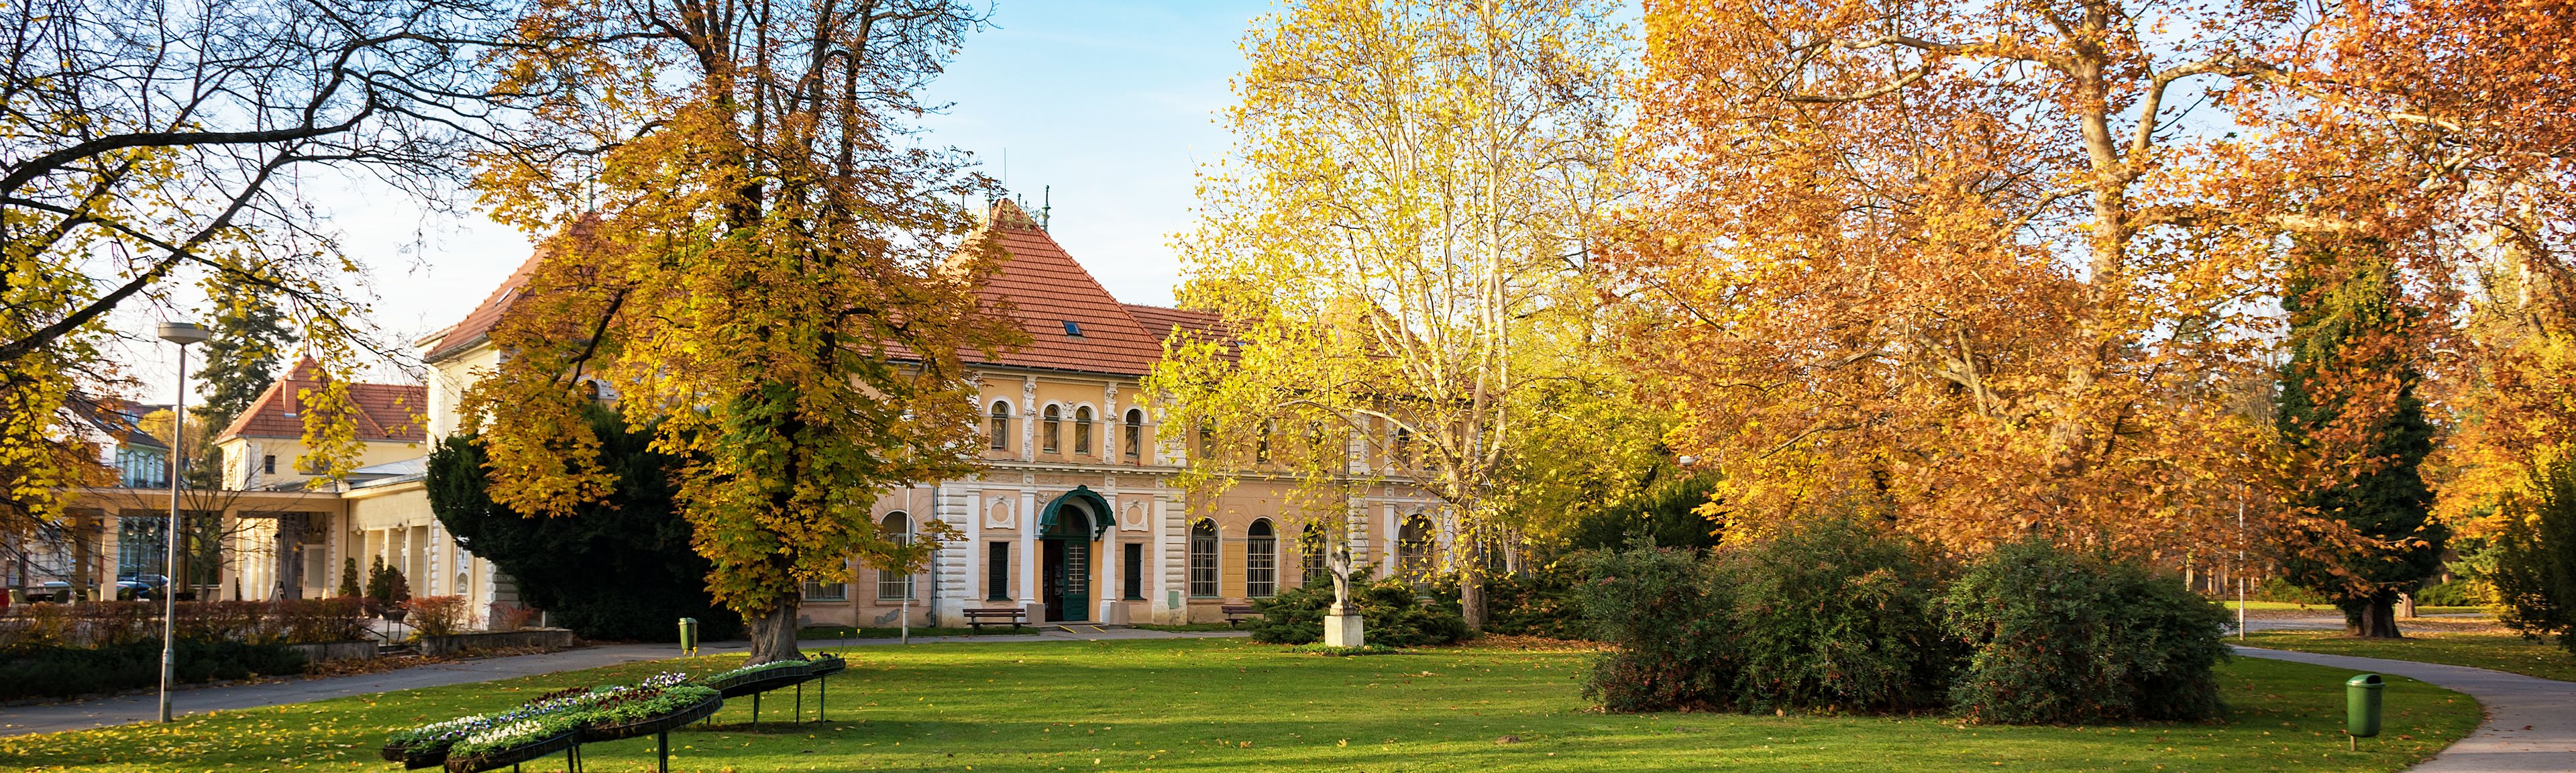 Historisches Gebäude in Piestany im Herbst